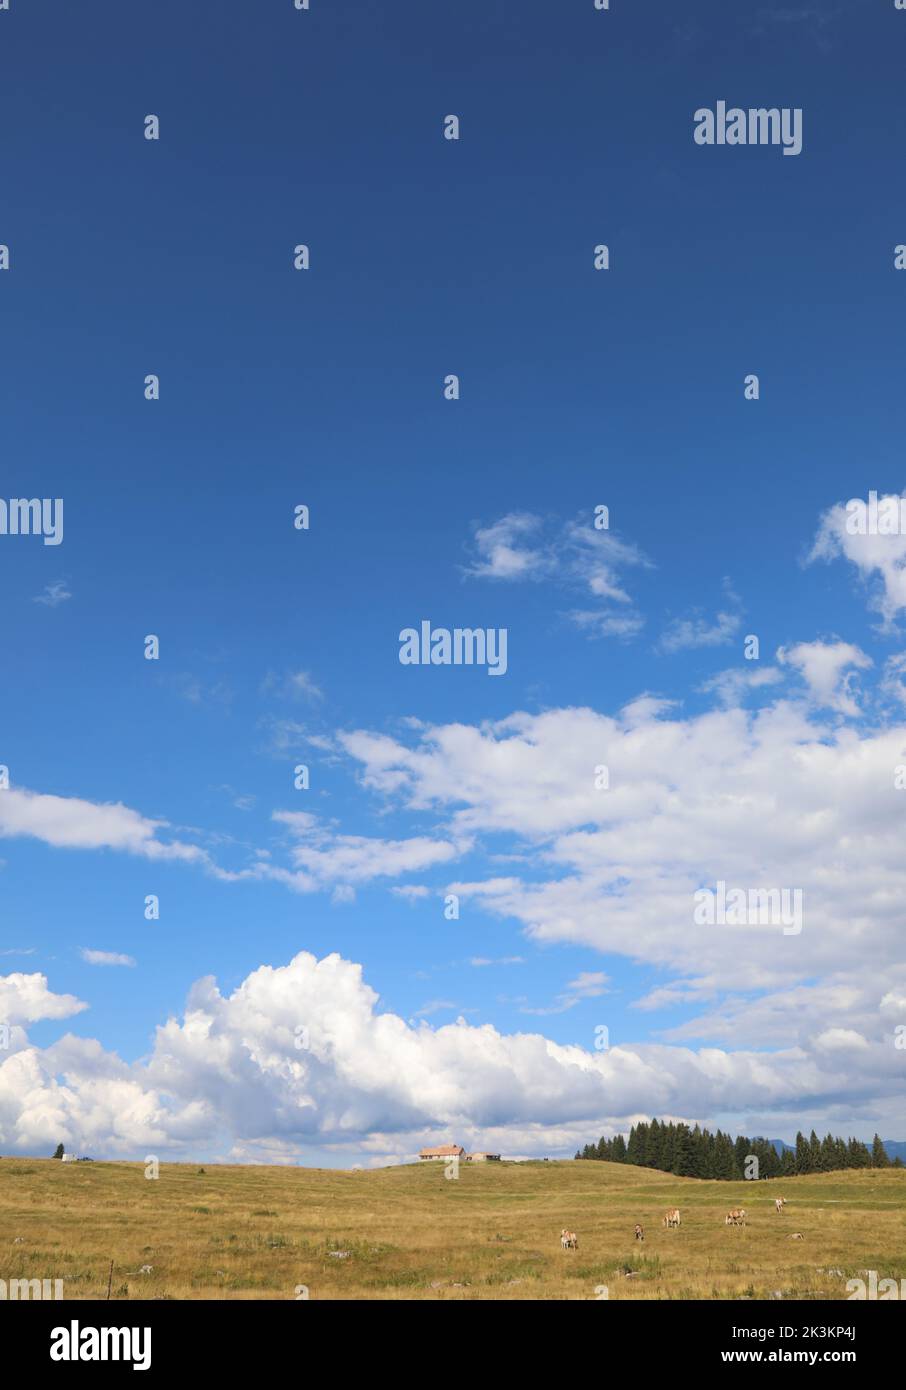 amplio panorama bajo el pasto y el granero y las nubes blancas en el cielo azul Foto de stock